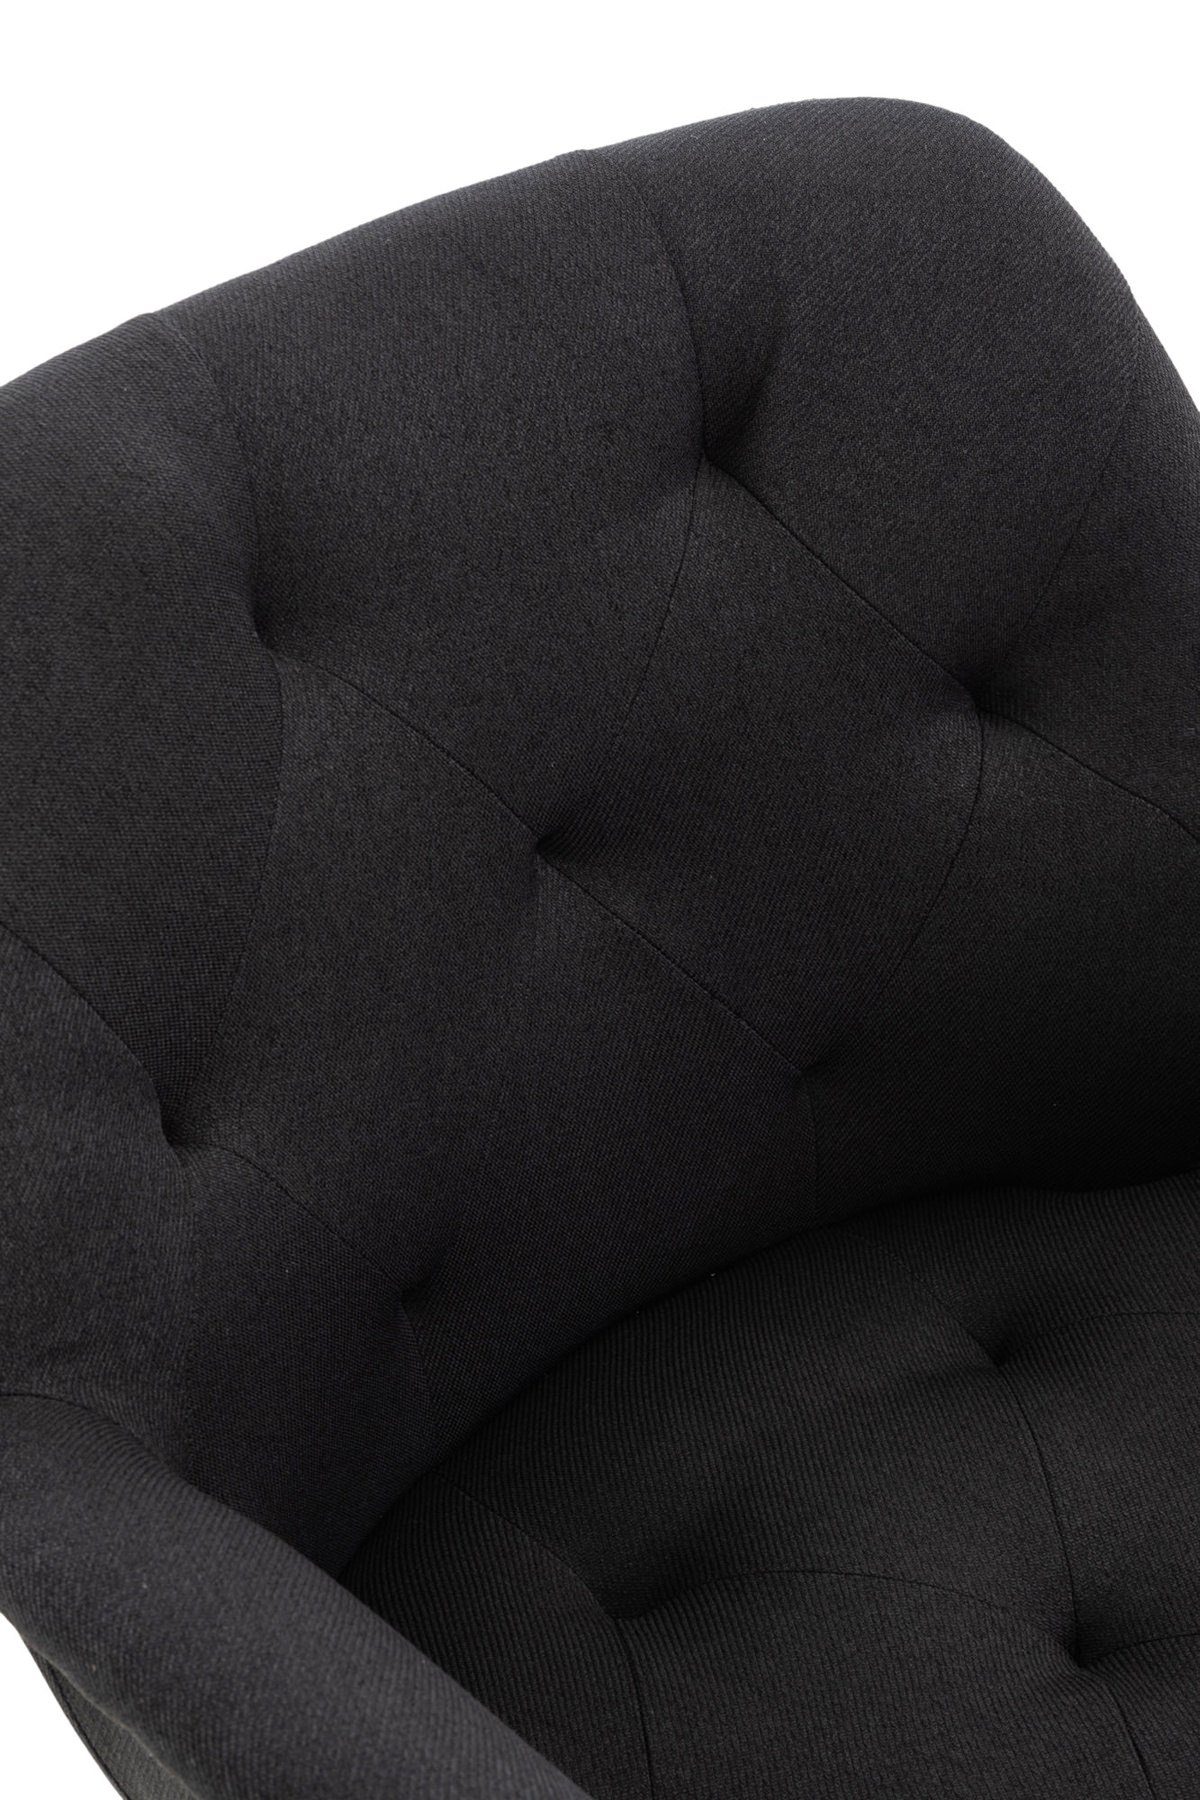 TPFLiving Esszimmerstuhl Lamfol mit hochwertig Metall - Esstischstuhl Sitzfläche: Gestell: - (Küchenstuhl gepolsterter Stoff - Konferenzstuhl Wohnzimmerstuhl), schwarz - Sitzfläche schwarz